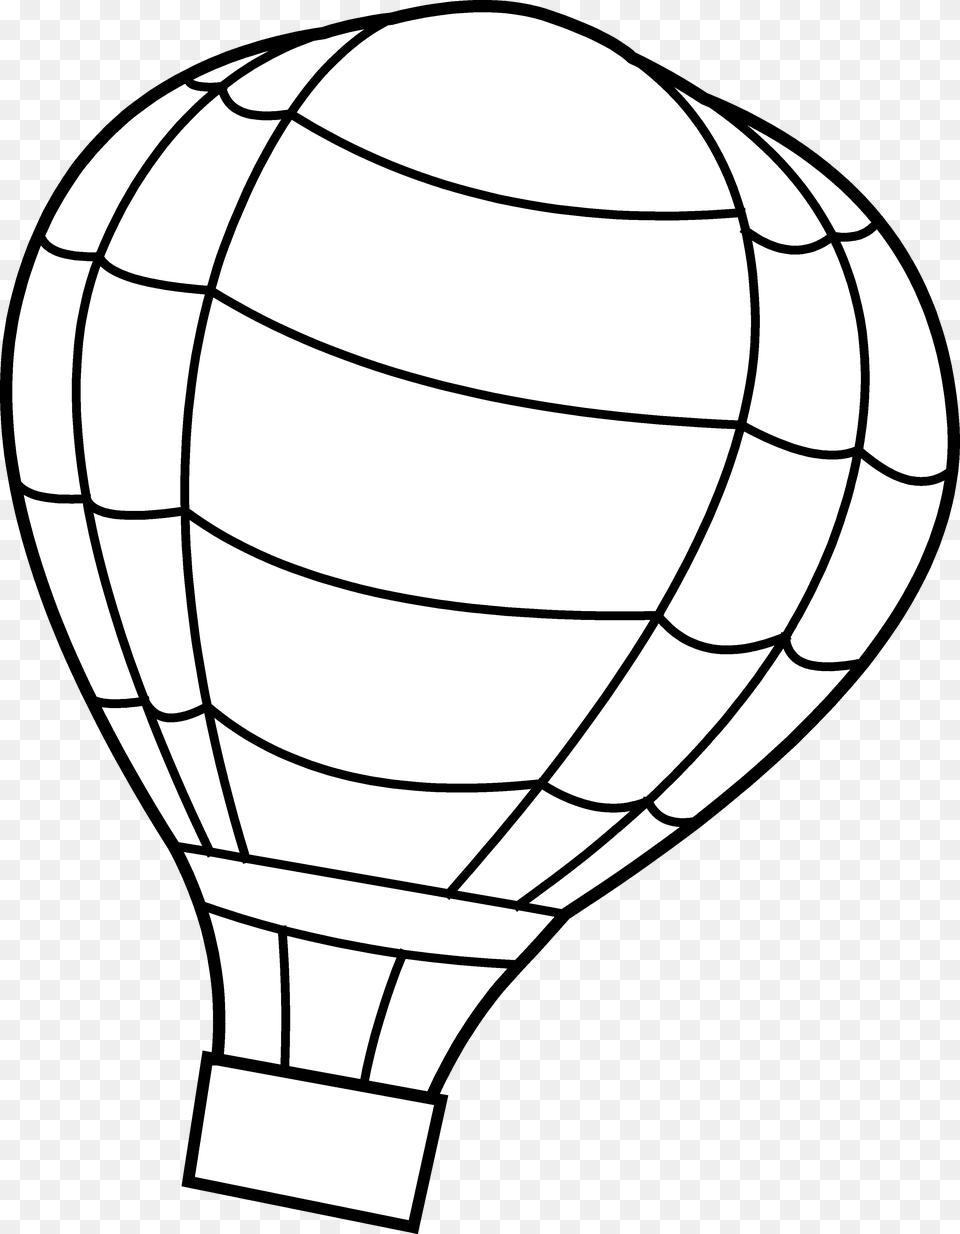 Hot Air Balloon Outline Hot Air Balloon Line Drawing, Aircraft, Hot Air Balloon, Transportation, Vehicle Png Image